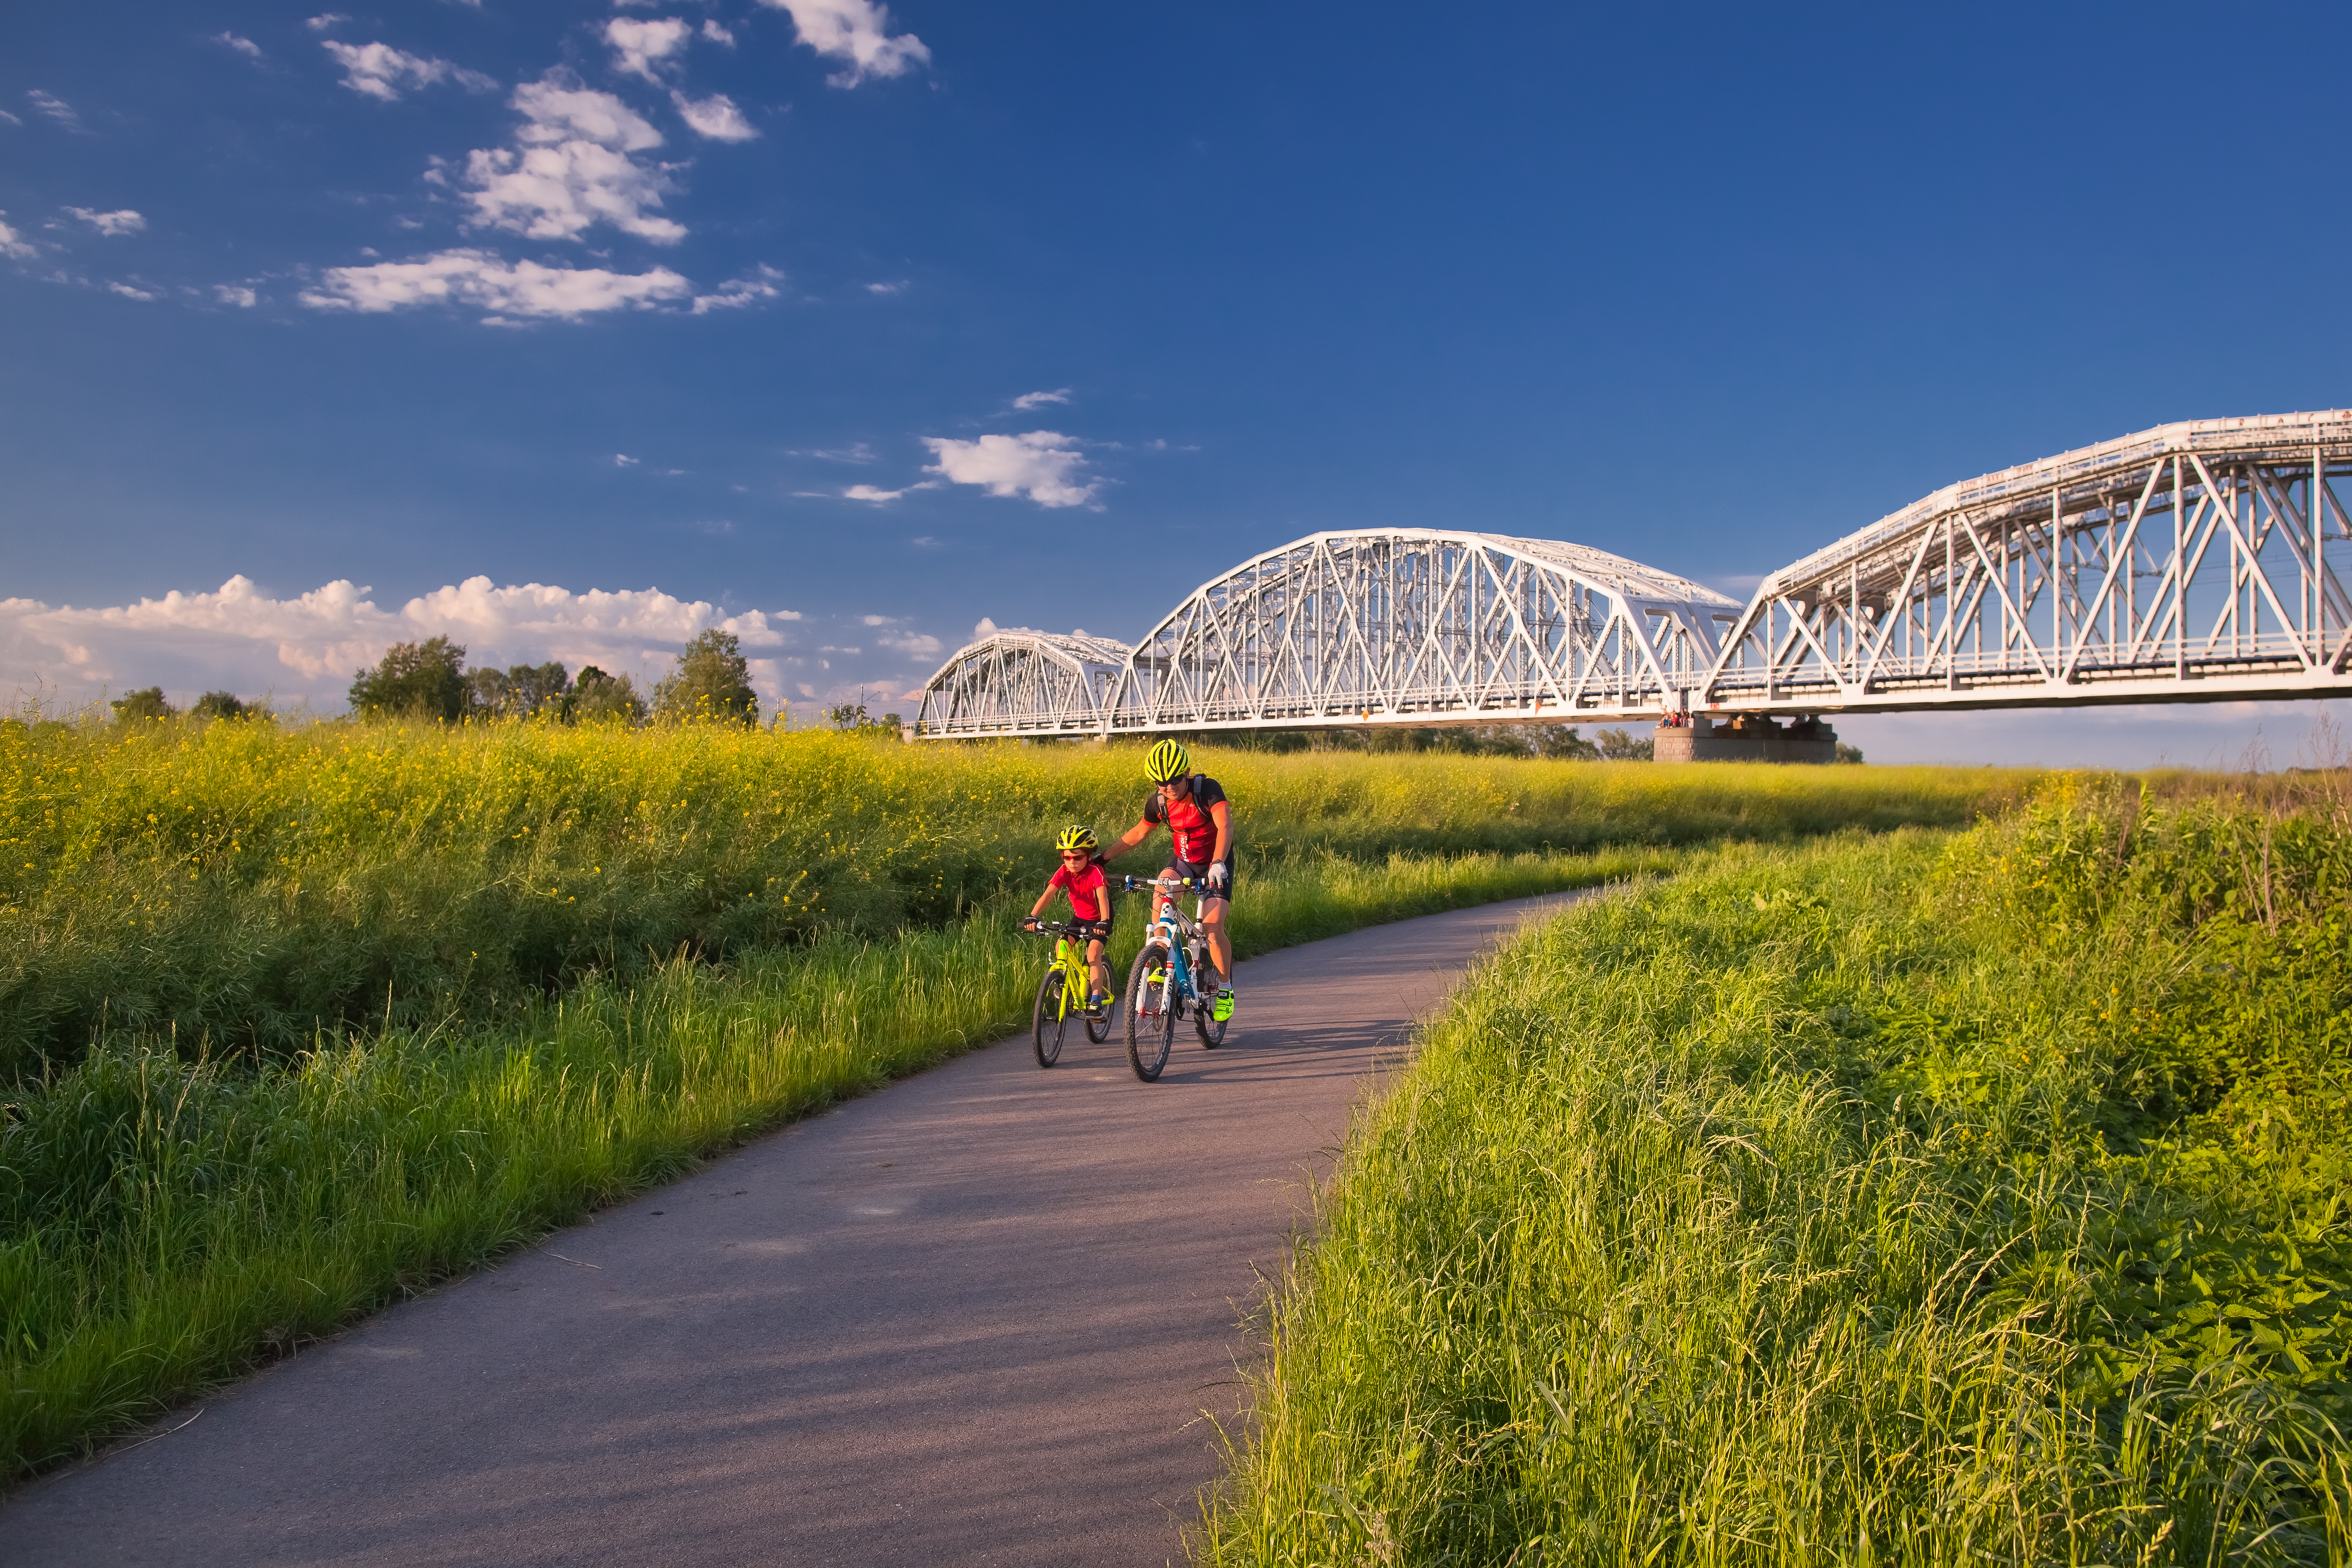 Ojciec i syn w kaskach i letnich strojach sportowych jadą rowerami po asfaltowej drodze rowerowej. Obok pole uprawne z rzepakiem, w głębi – most kolejowy. 